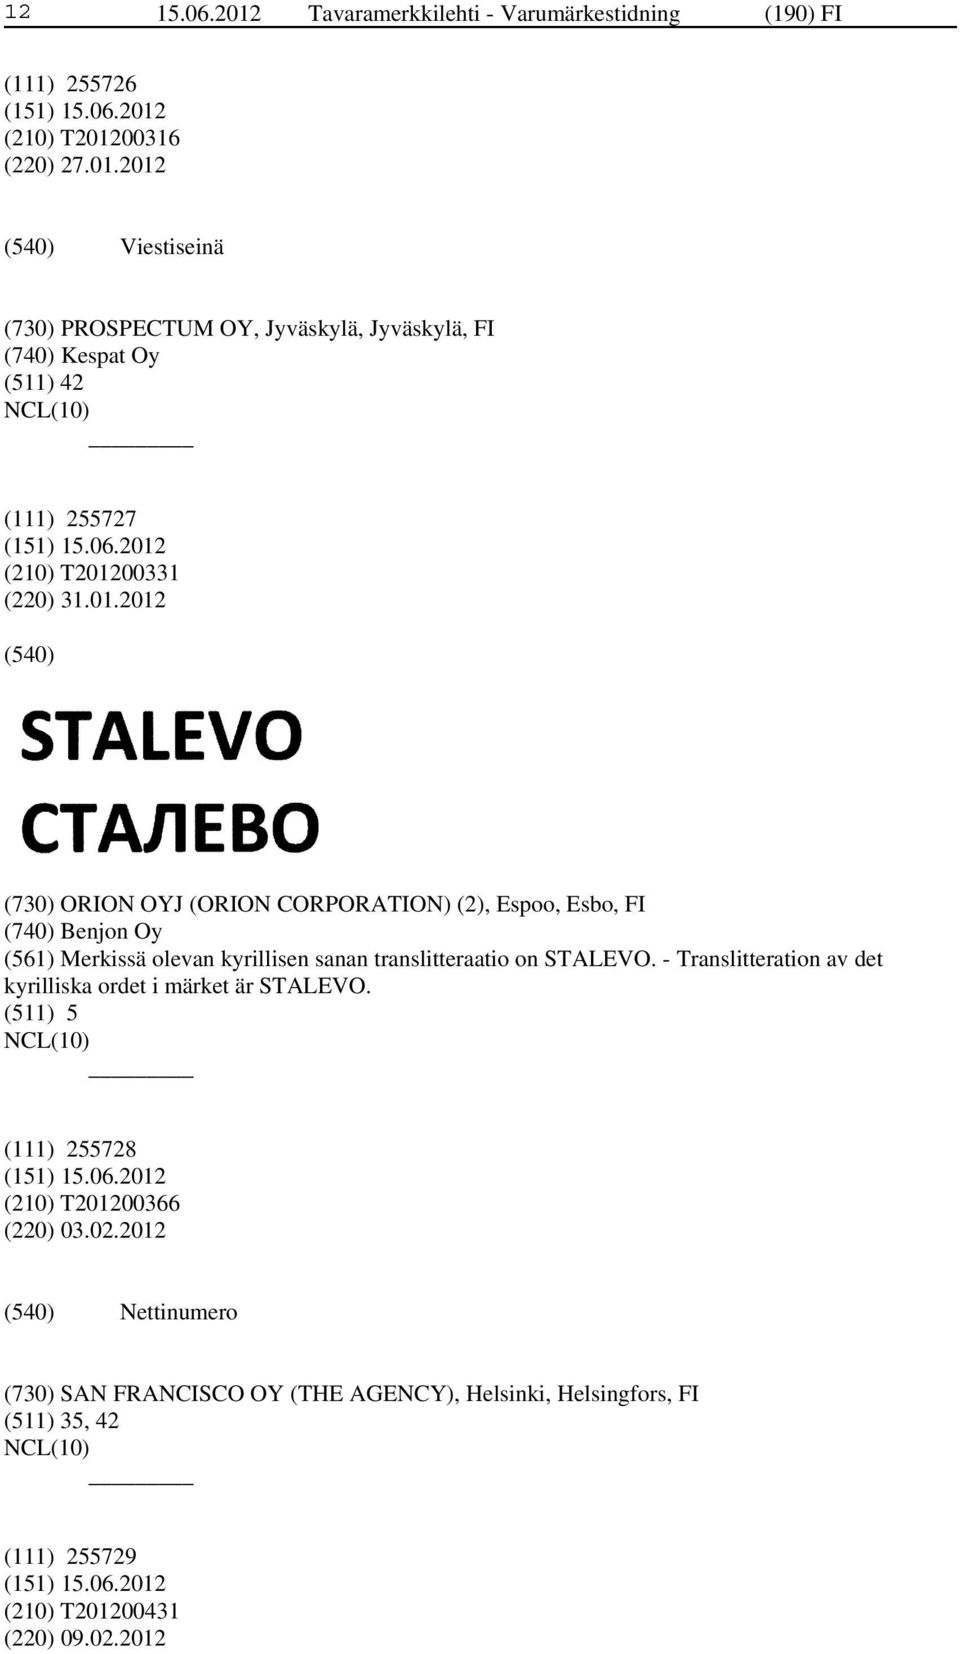 - Translitteration av det kyrilliska ordet i märket är STALEVO. (511) 5 (111) 255728 (210) T201200366 (220) 03.02.